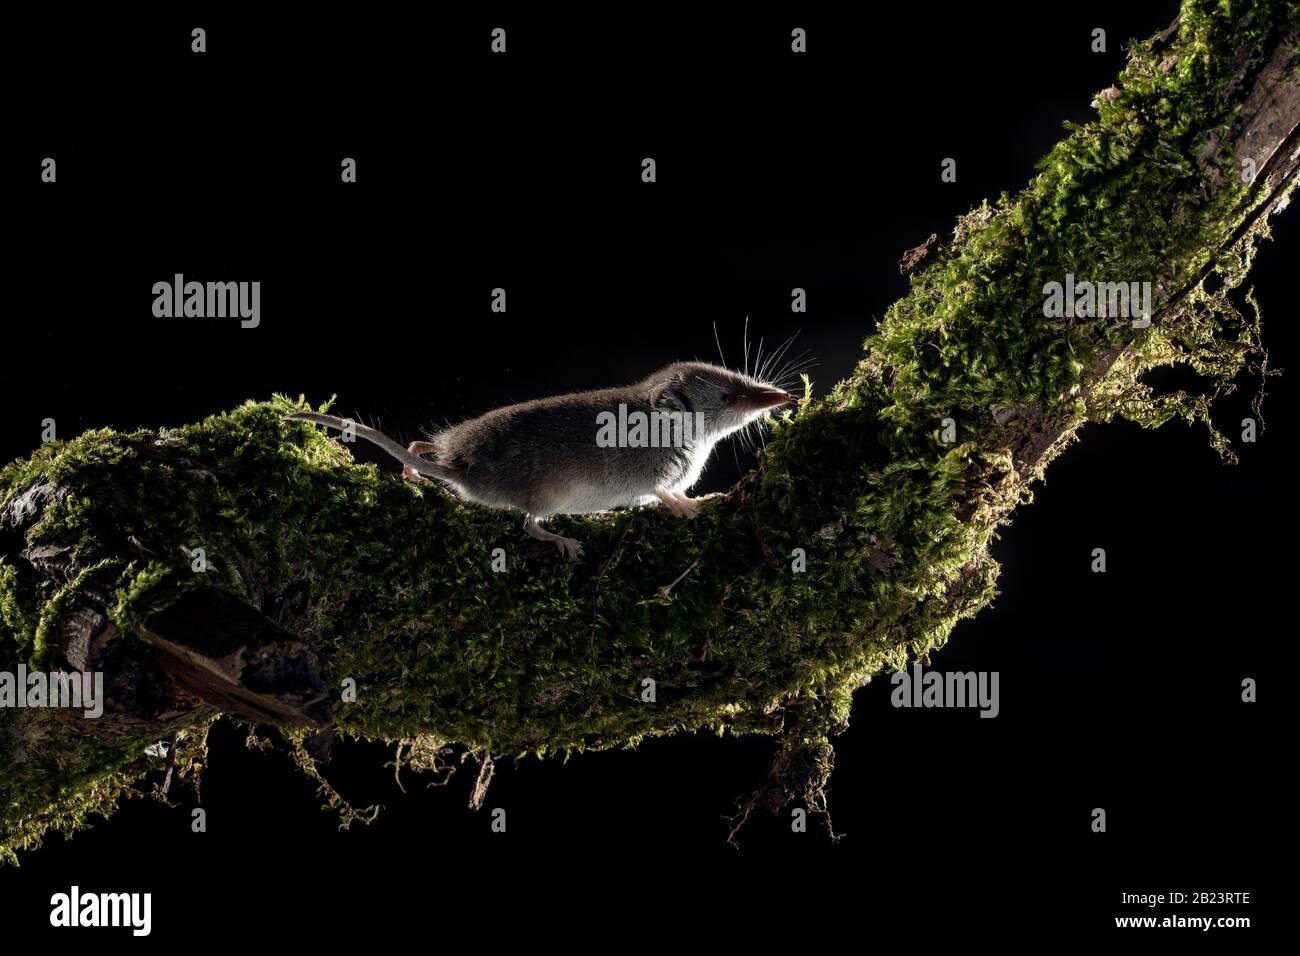 La souris eurasienne de pygmée (Sorex minutus) se trouve dans un habitat naturel. Elle monte une branche, l'un des plus petits mammifères du monde, le shrew Banque D'Images